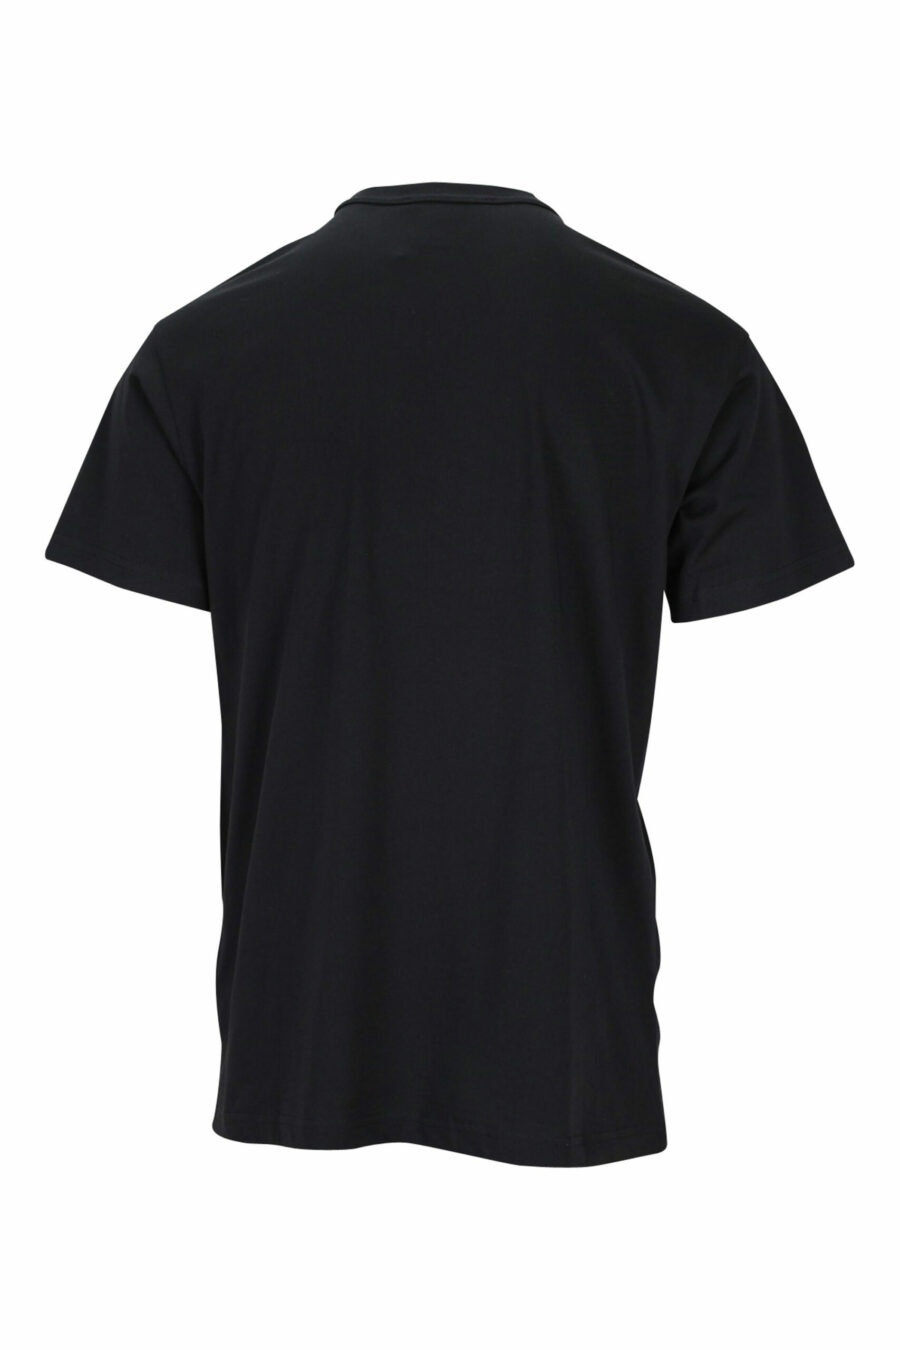 Schwarzes T-Shirt mit kontrastierendem klassischen Maxilogo - 8052019457698 1 skaliert